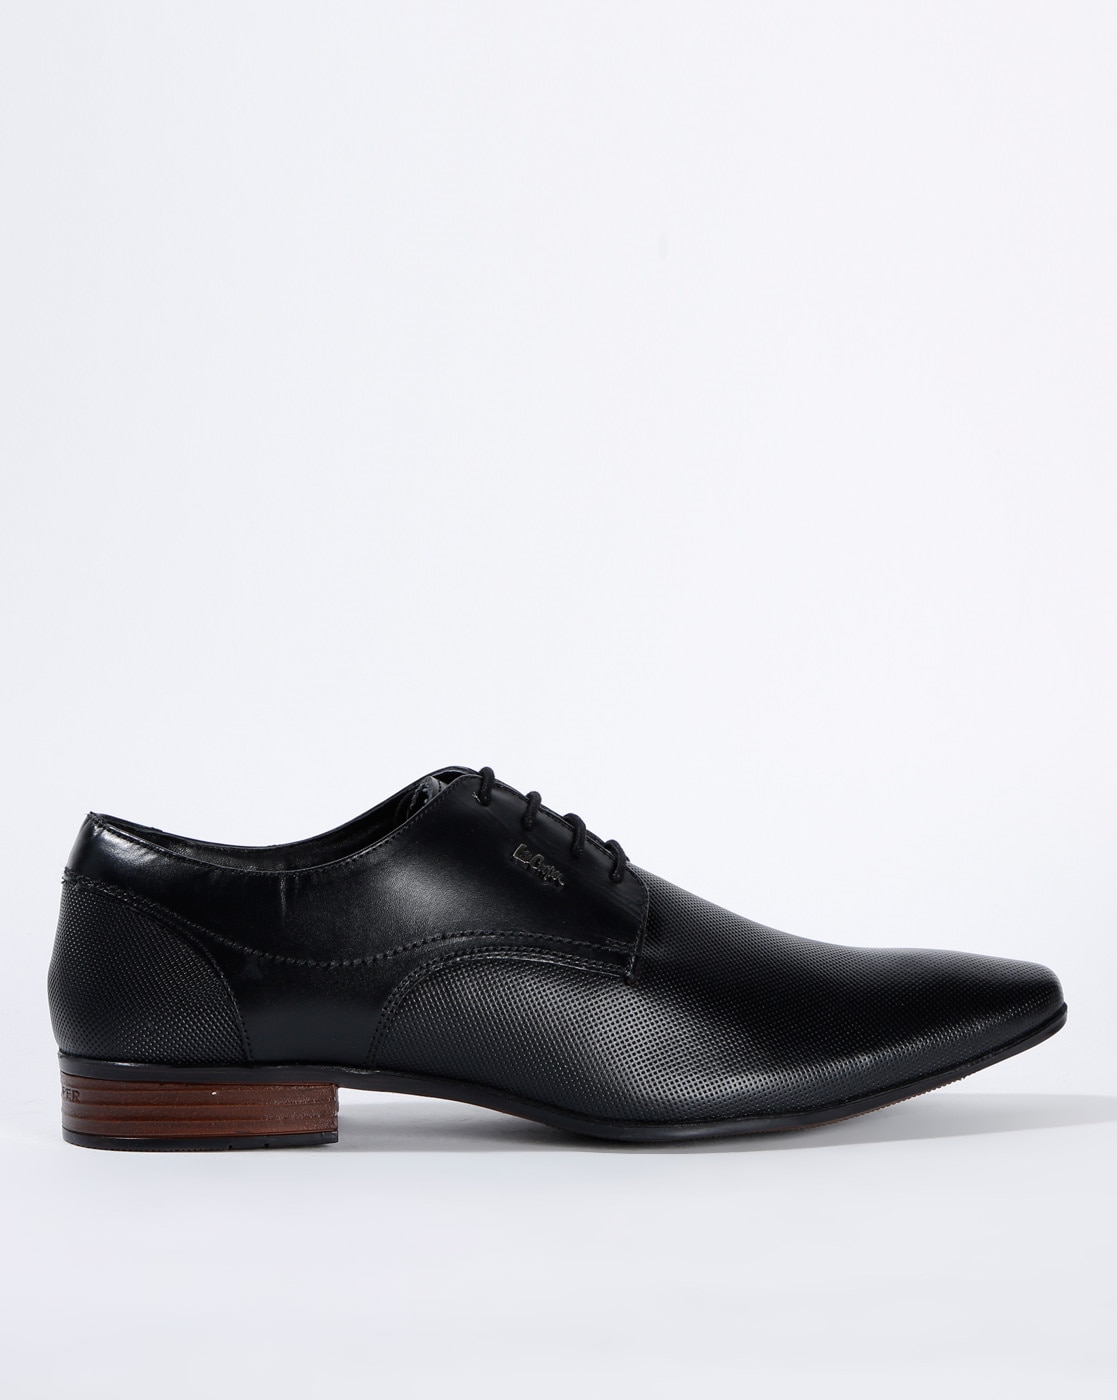 lee cooper men's formal shoes online